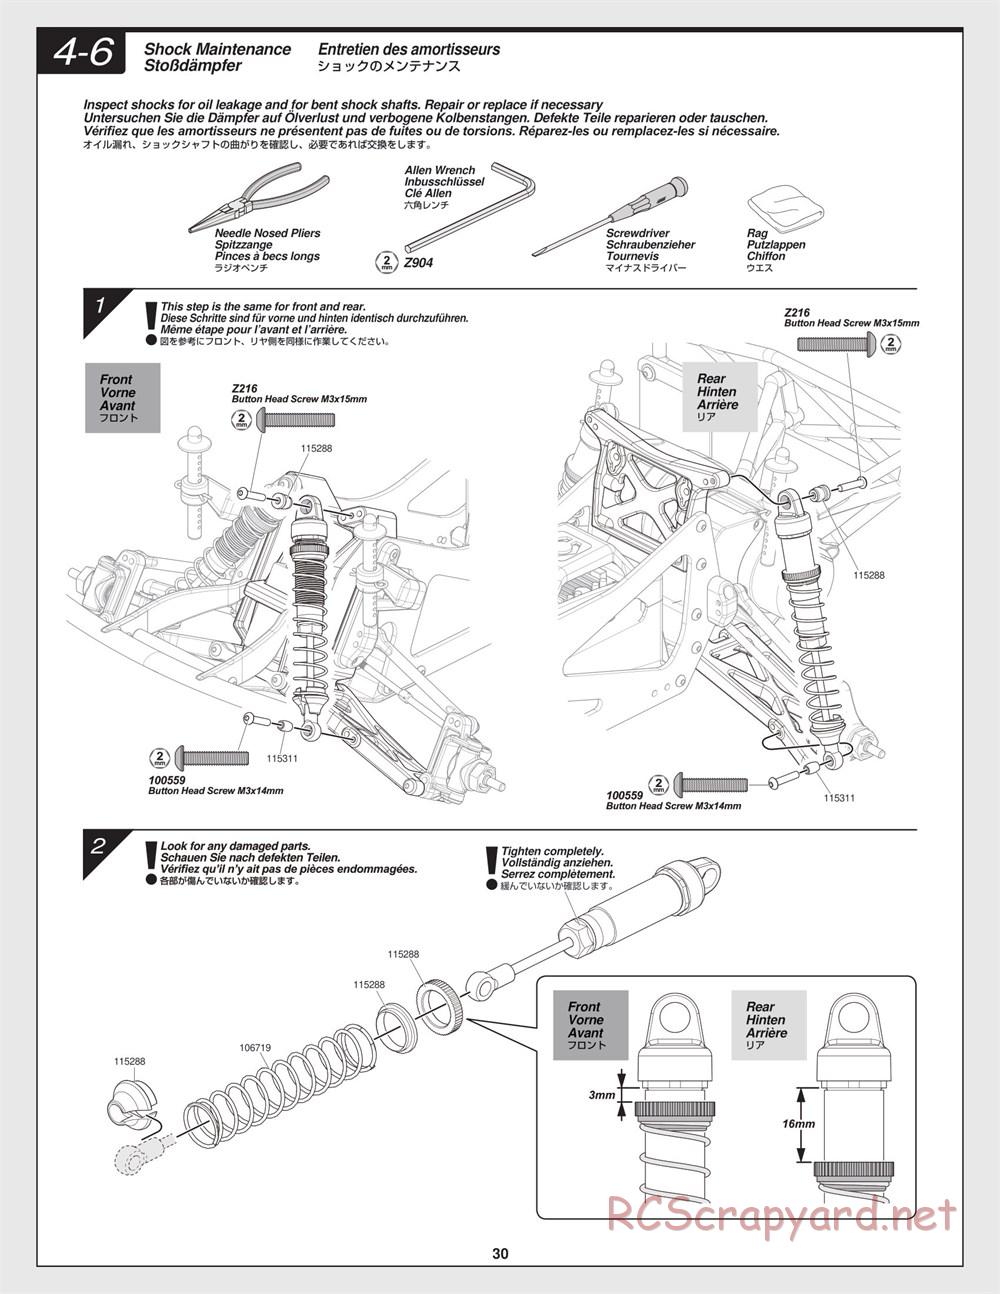 HPI - Jumpshot SC - Manual - Page 30